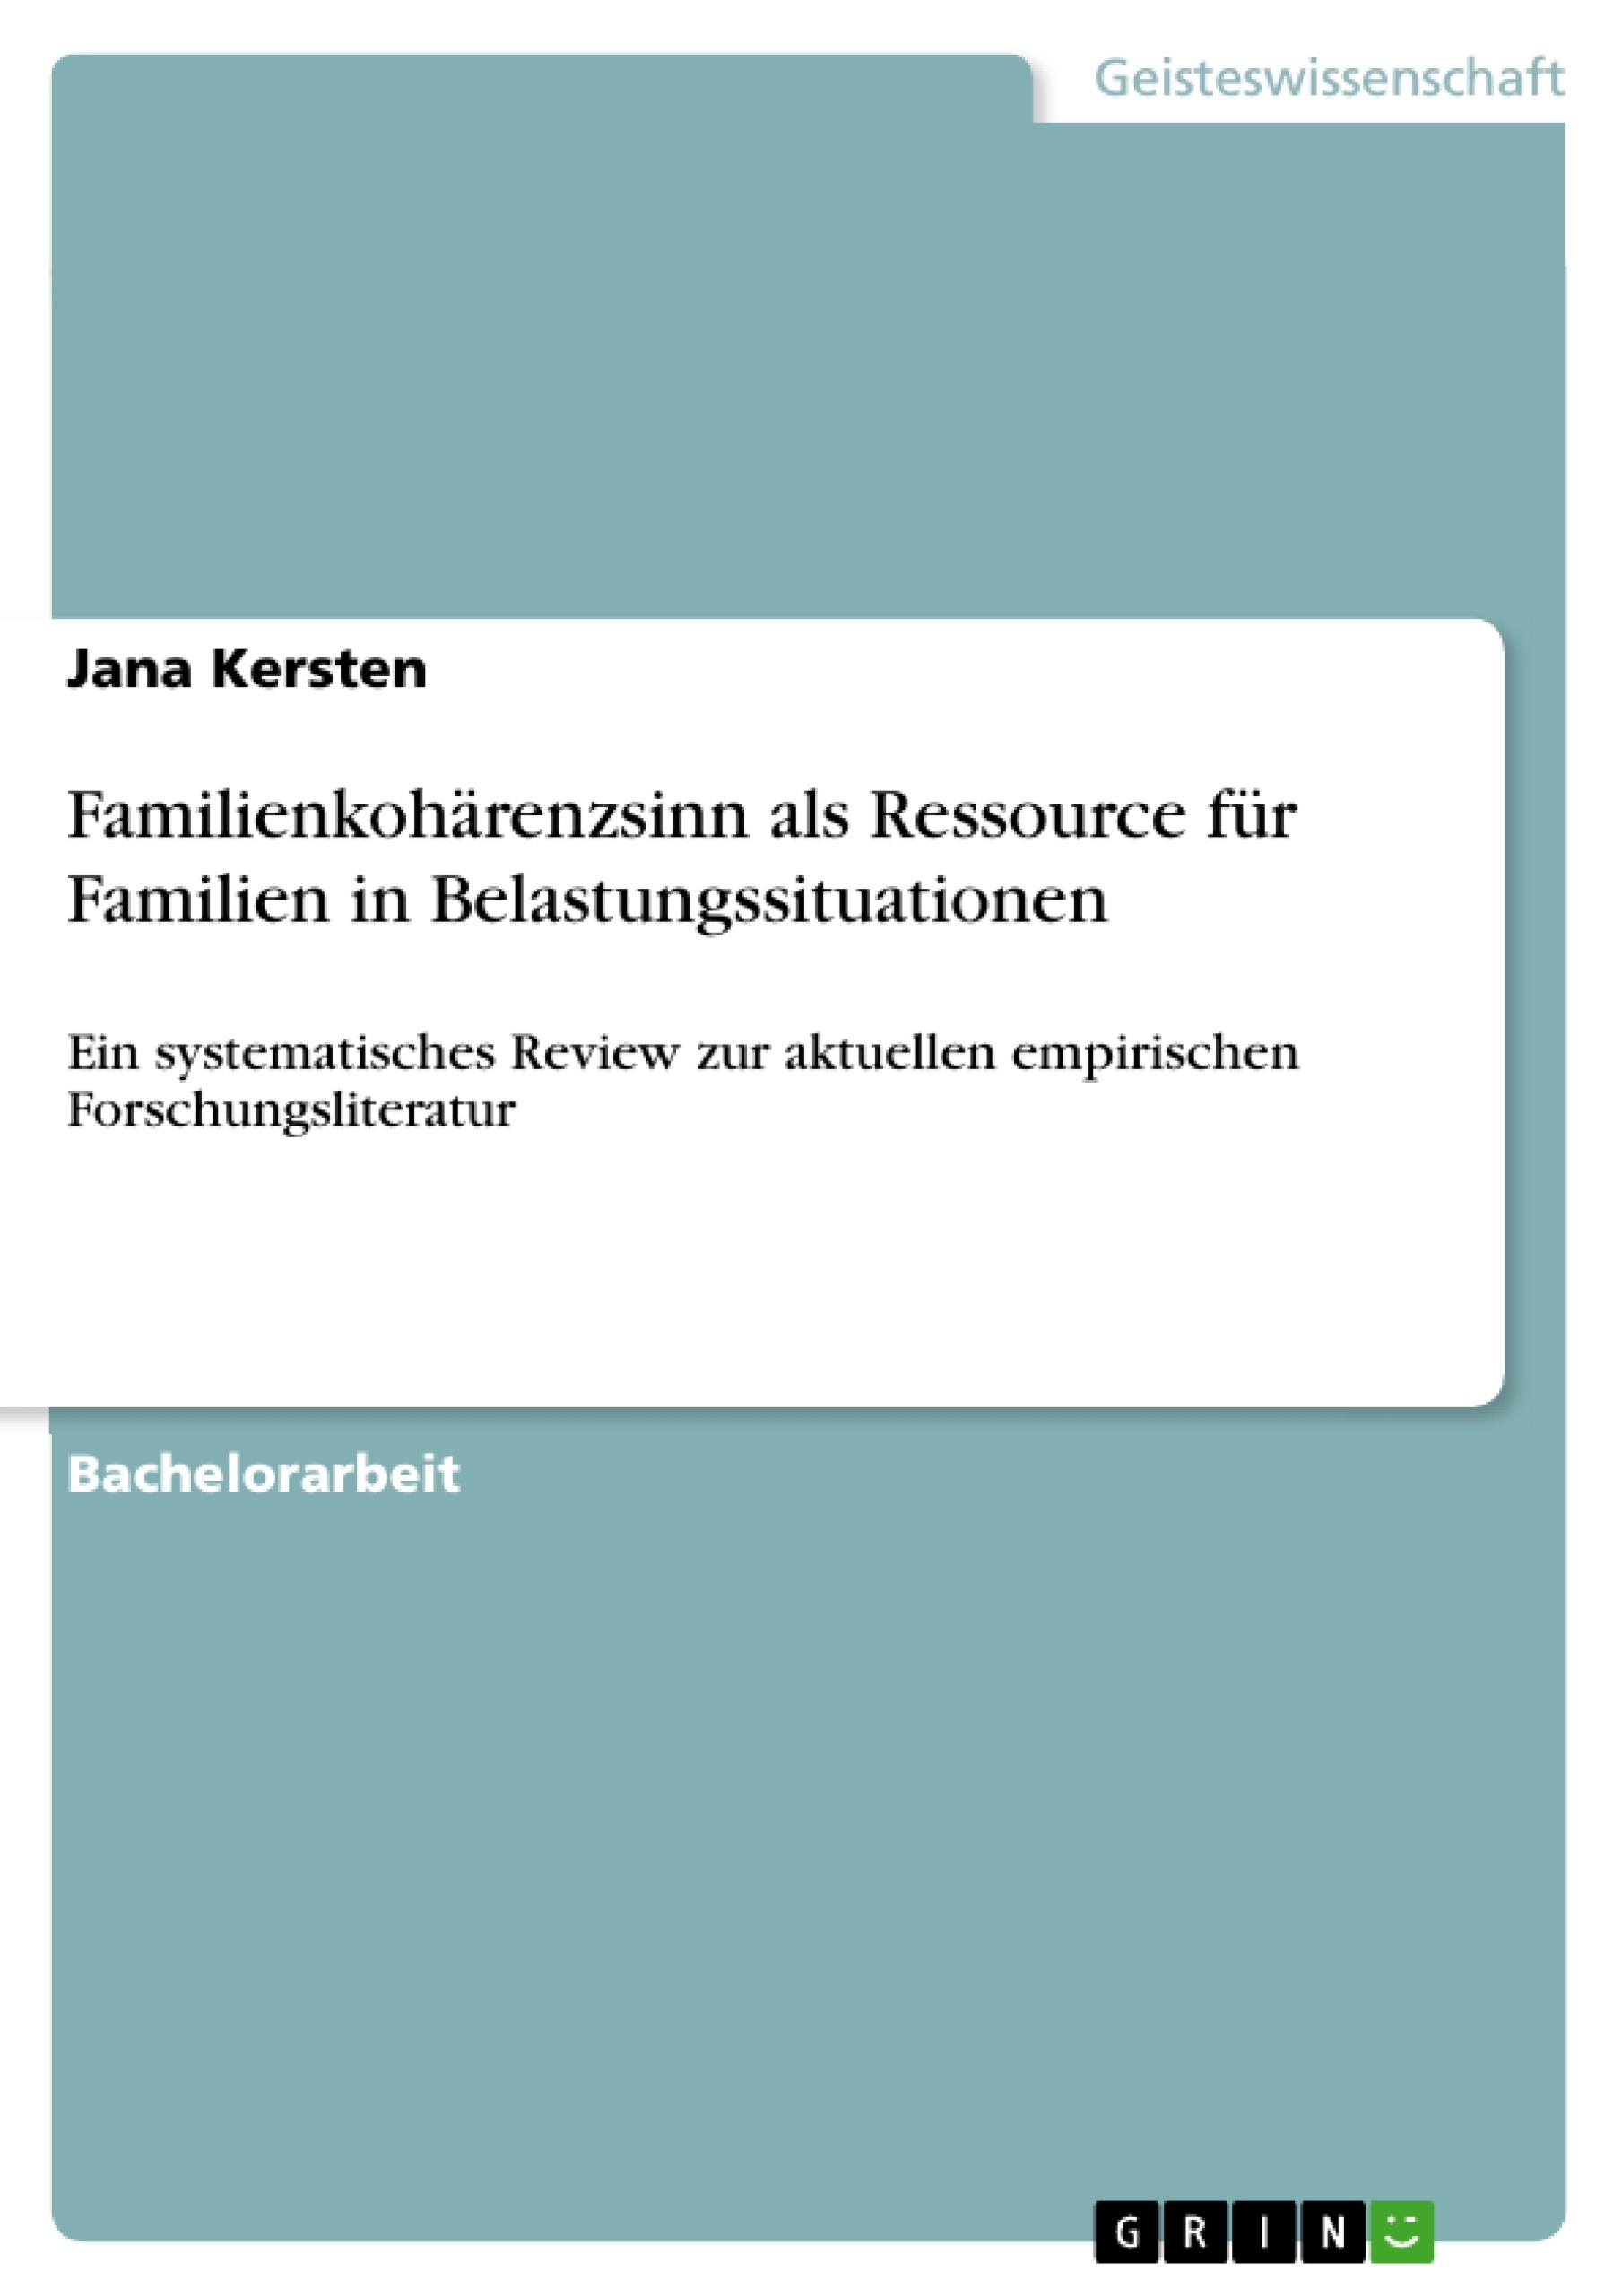 Título: Familienkohärenzsinn als Ressource für Familien in Belastungssituationen